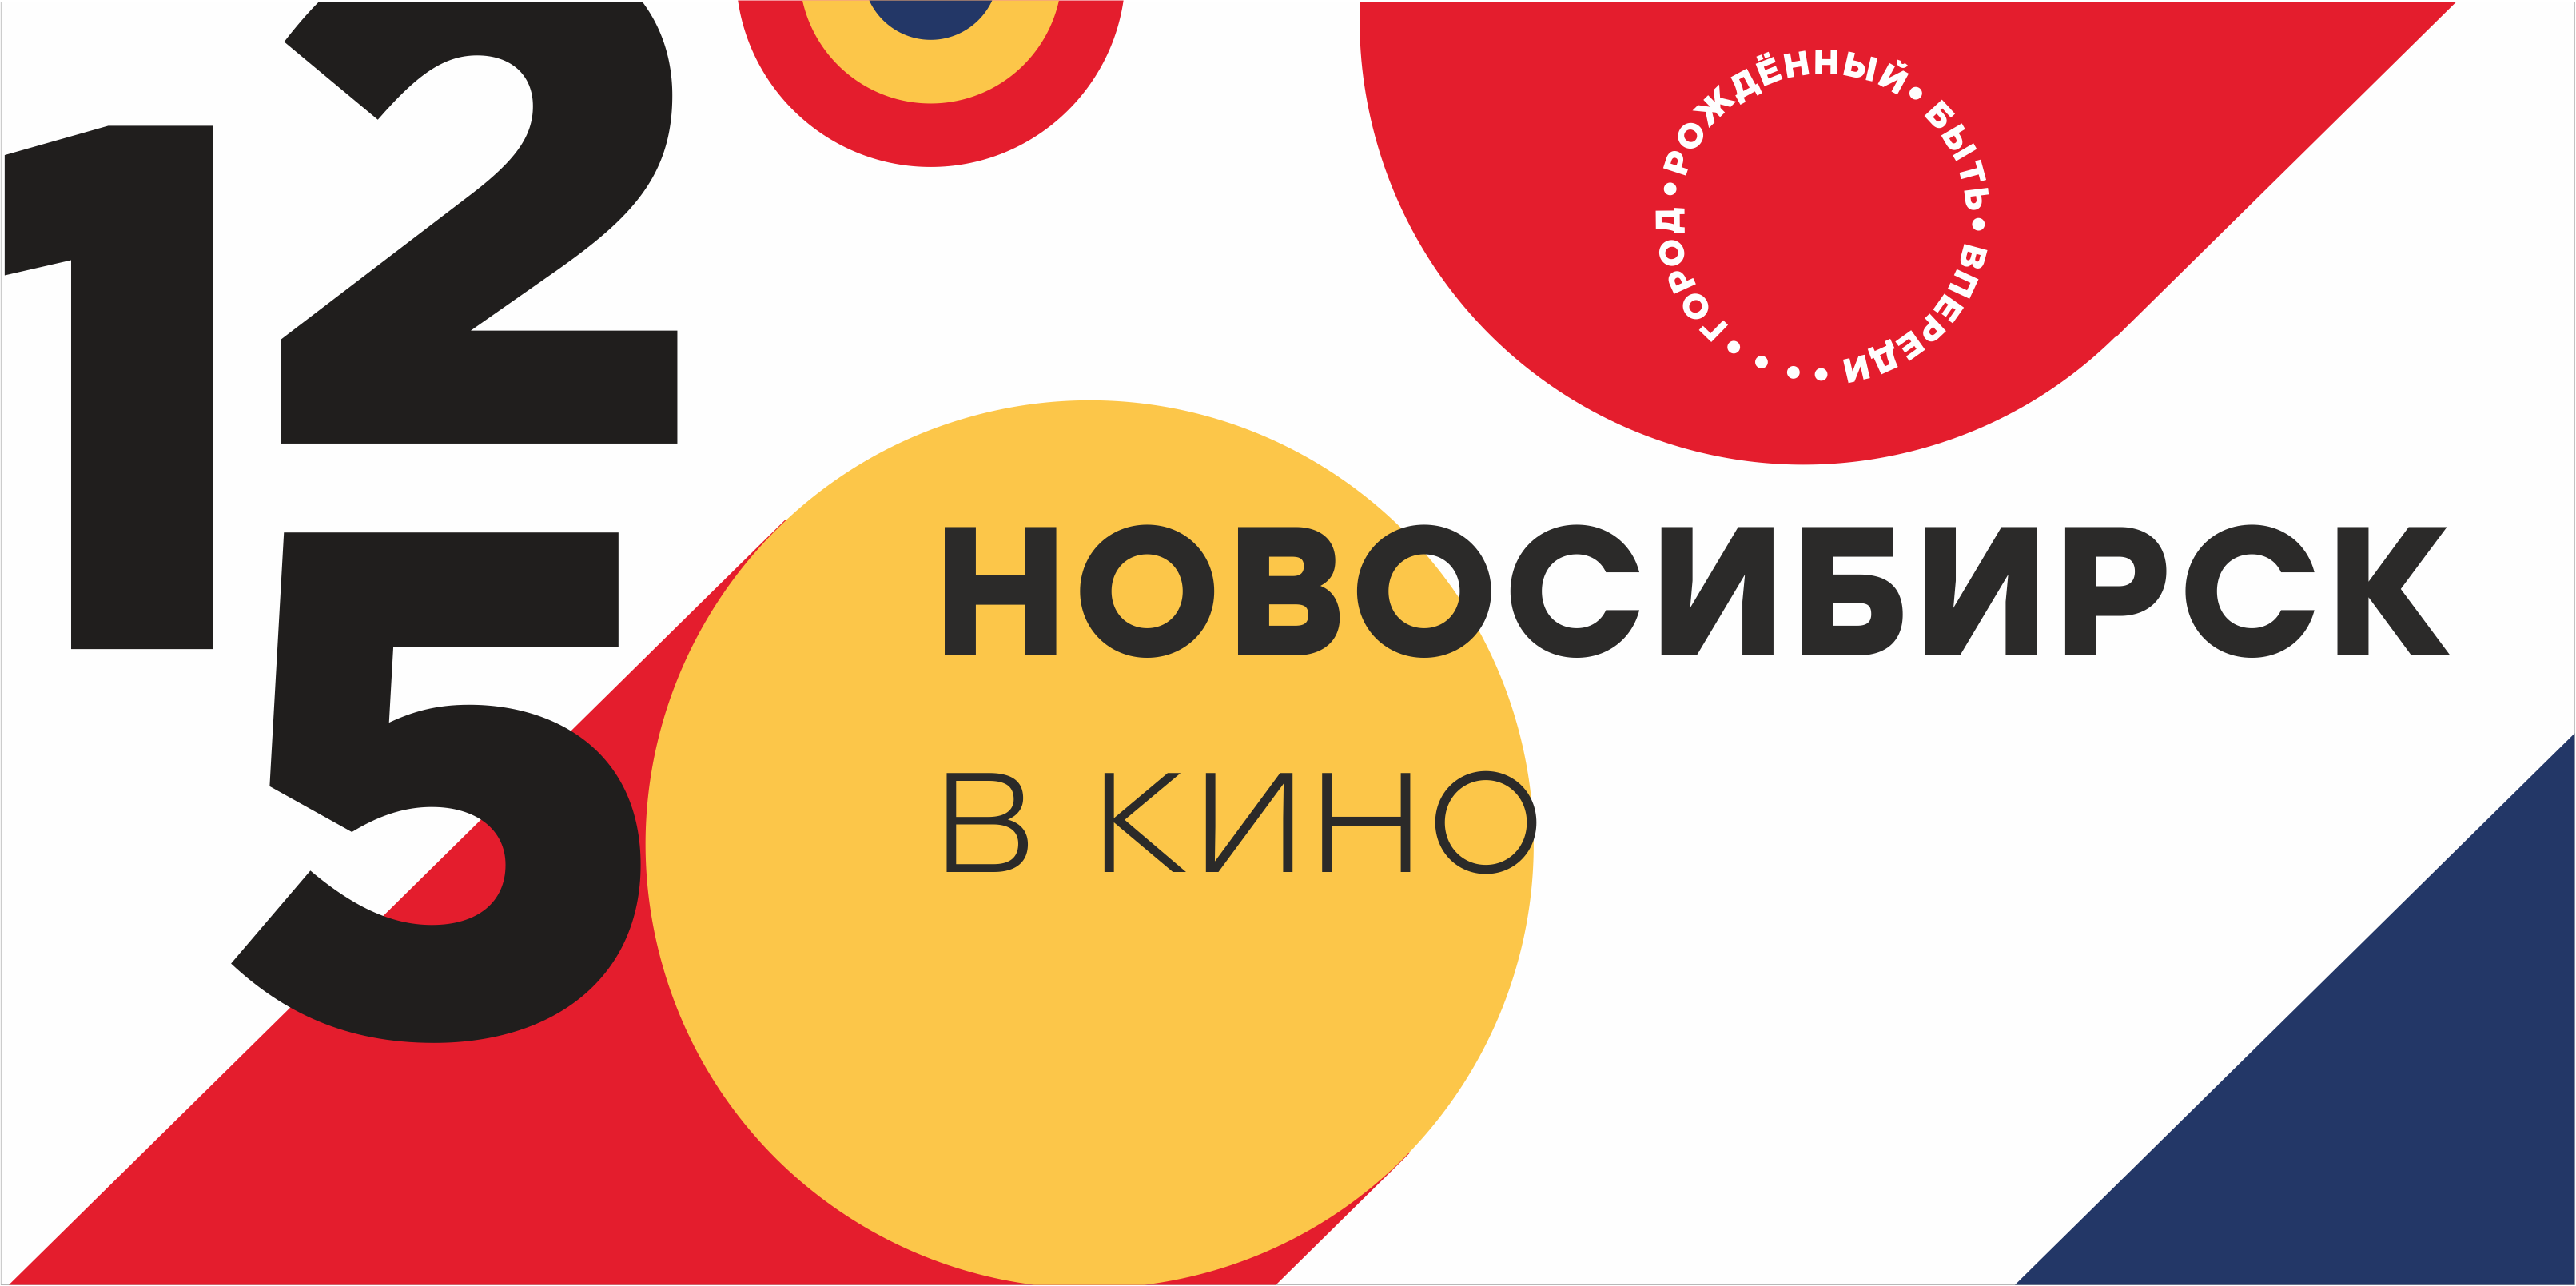 Бесплатные мероприятия и события в Москве